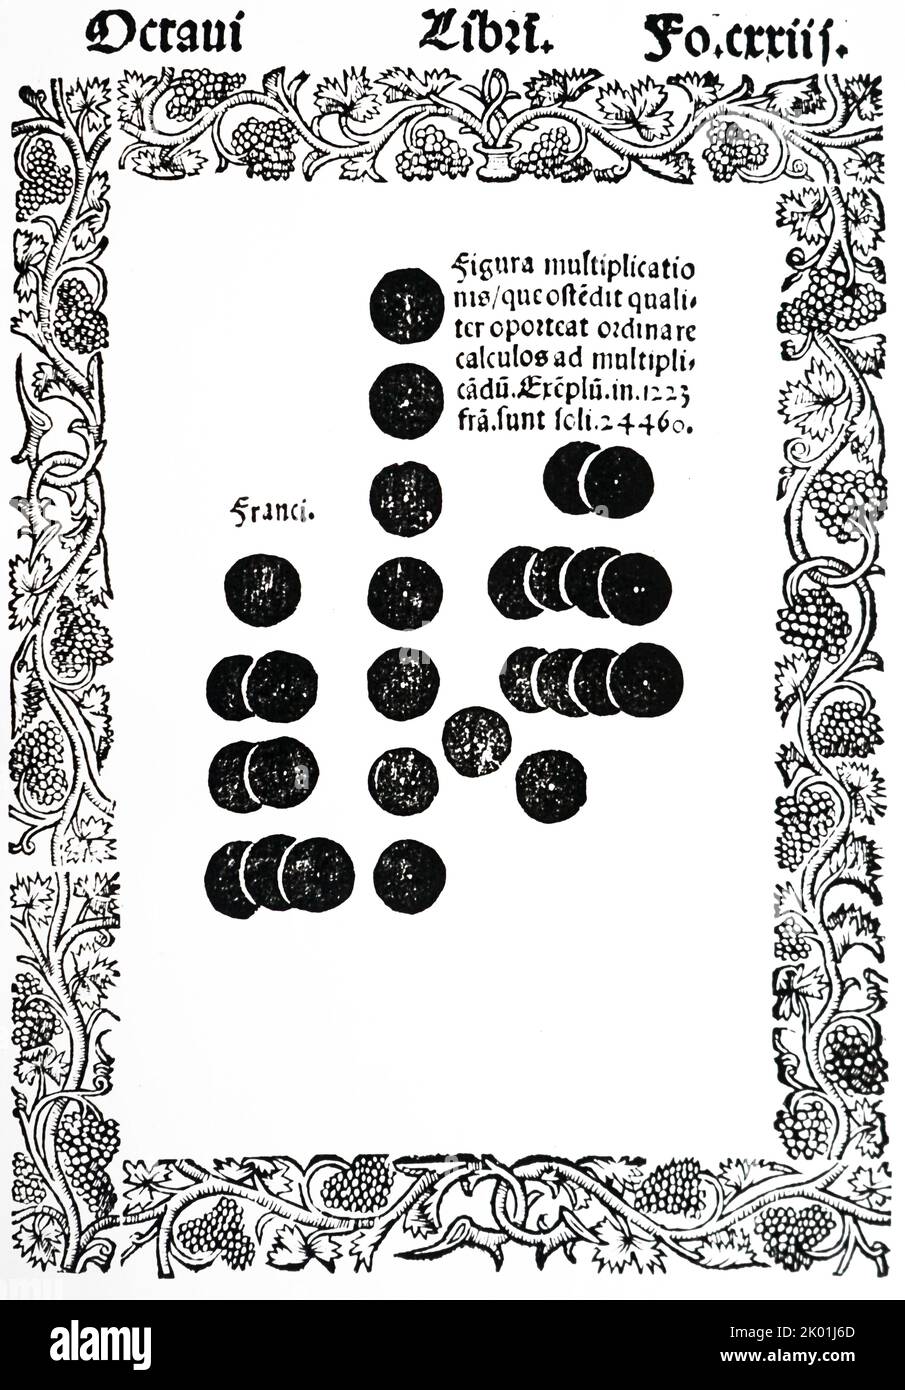 Figura che mostra il metodo per moltiplicare 1223 (a sinistra) utilizzando 20 contatori sulla tavola di calcolo con linee. Da Raymond Lull Practica compendiosa Artis, 1523. Foto Stock